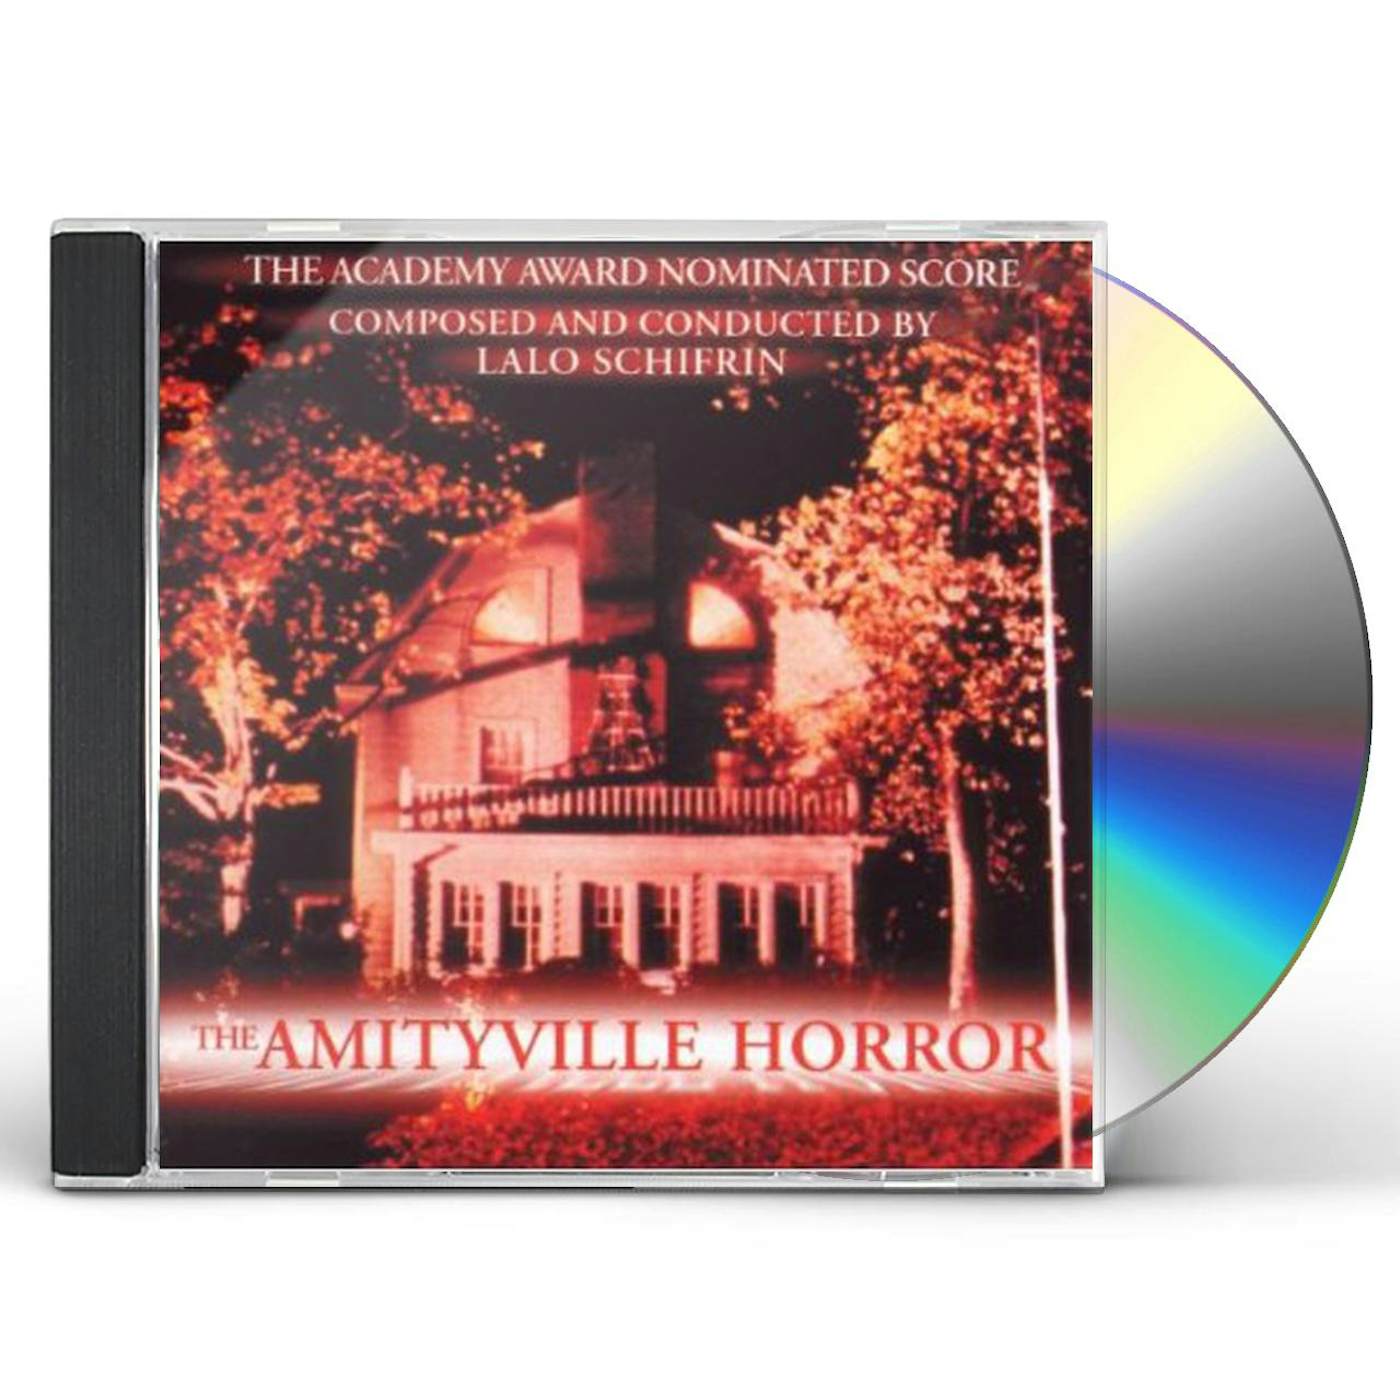 Lalo Schifrin AMITYVILLE HORROR (SCORE) / Original Soundtrack CD